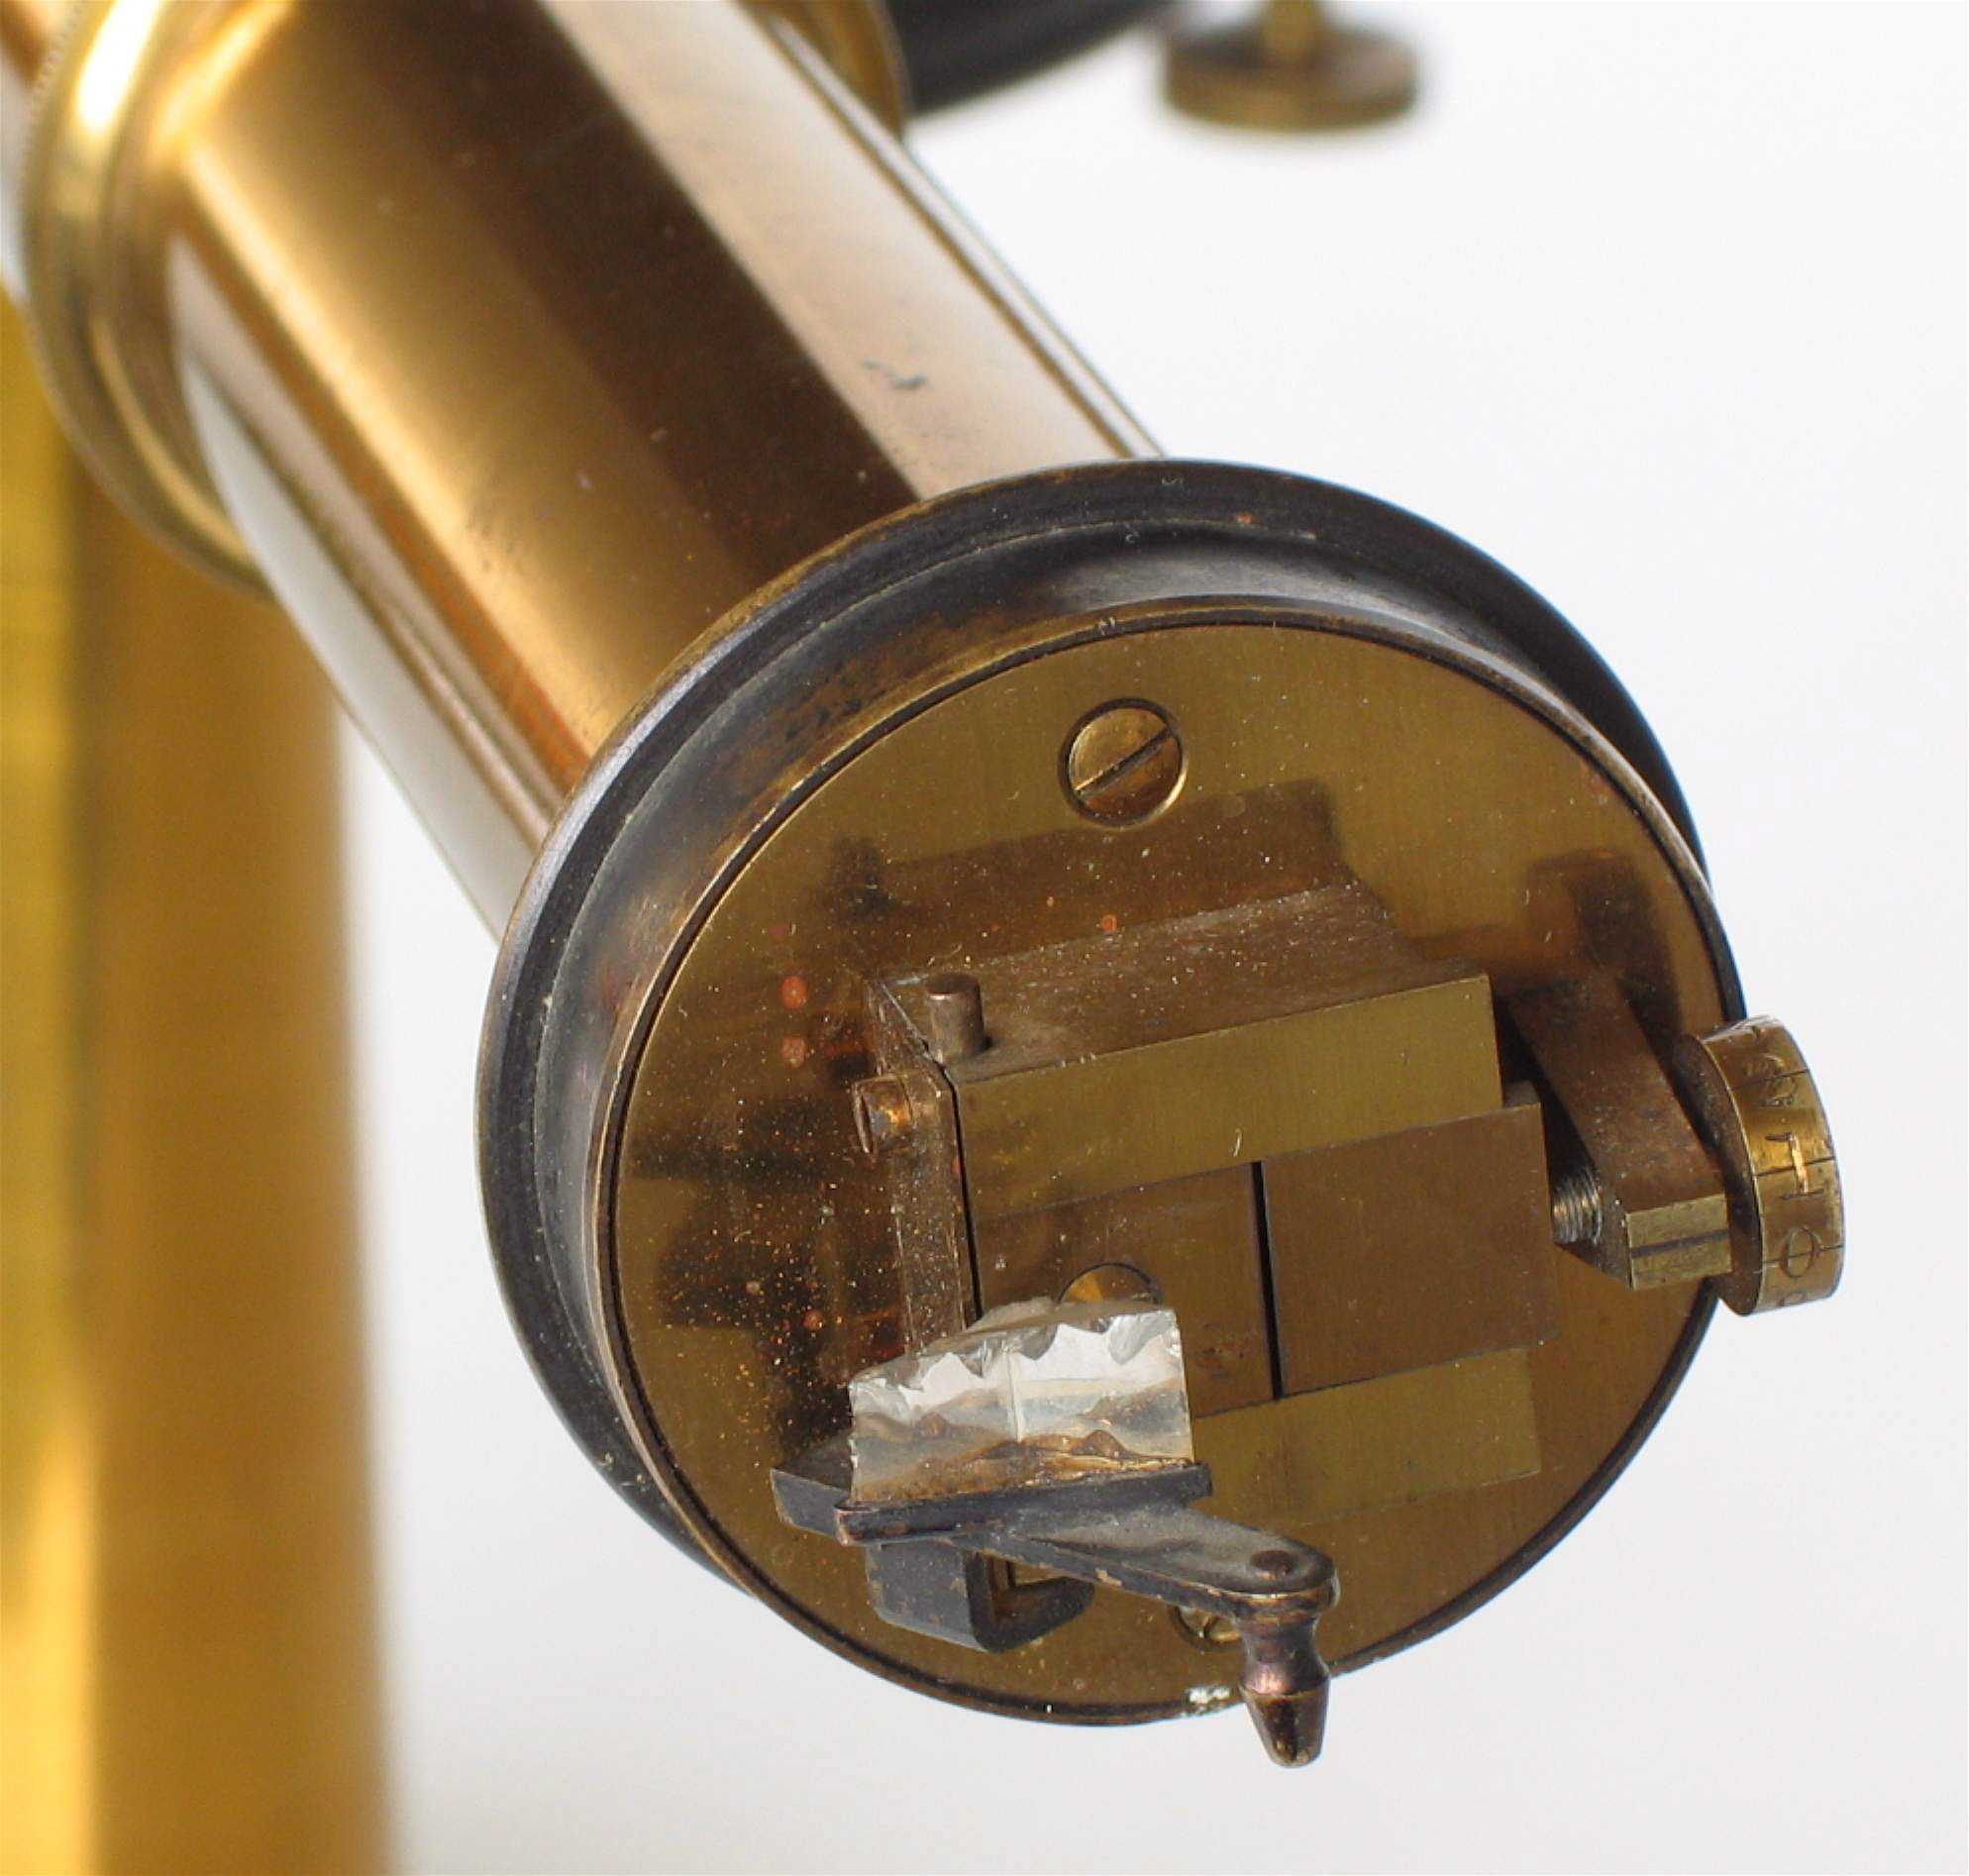 Spectroscope à deux bras,
avec goniomètre